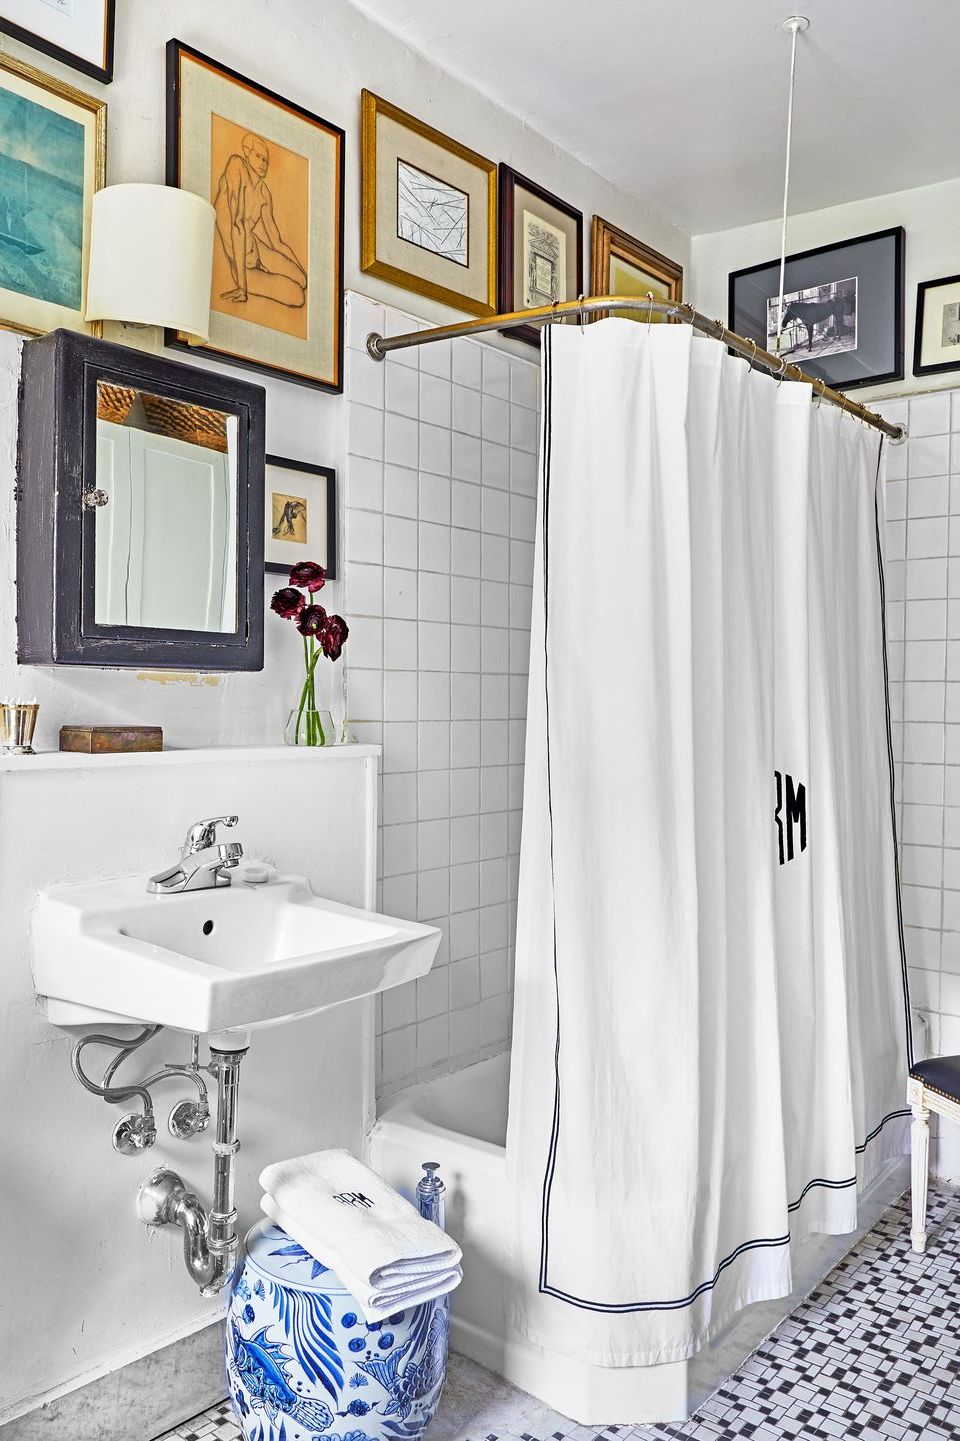 Home Decor Ideas - The Best Bathroom Fittings